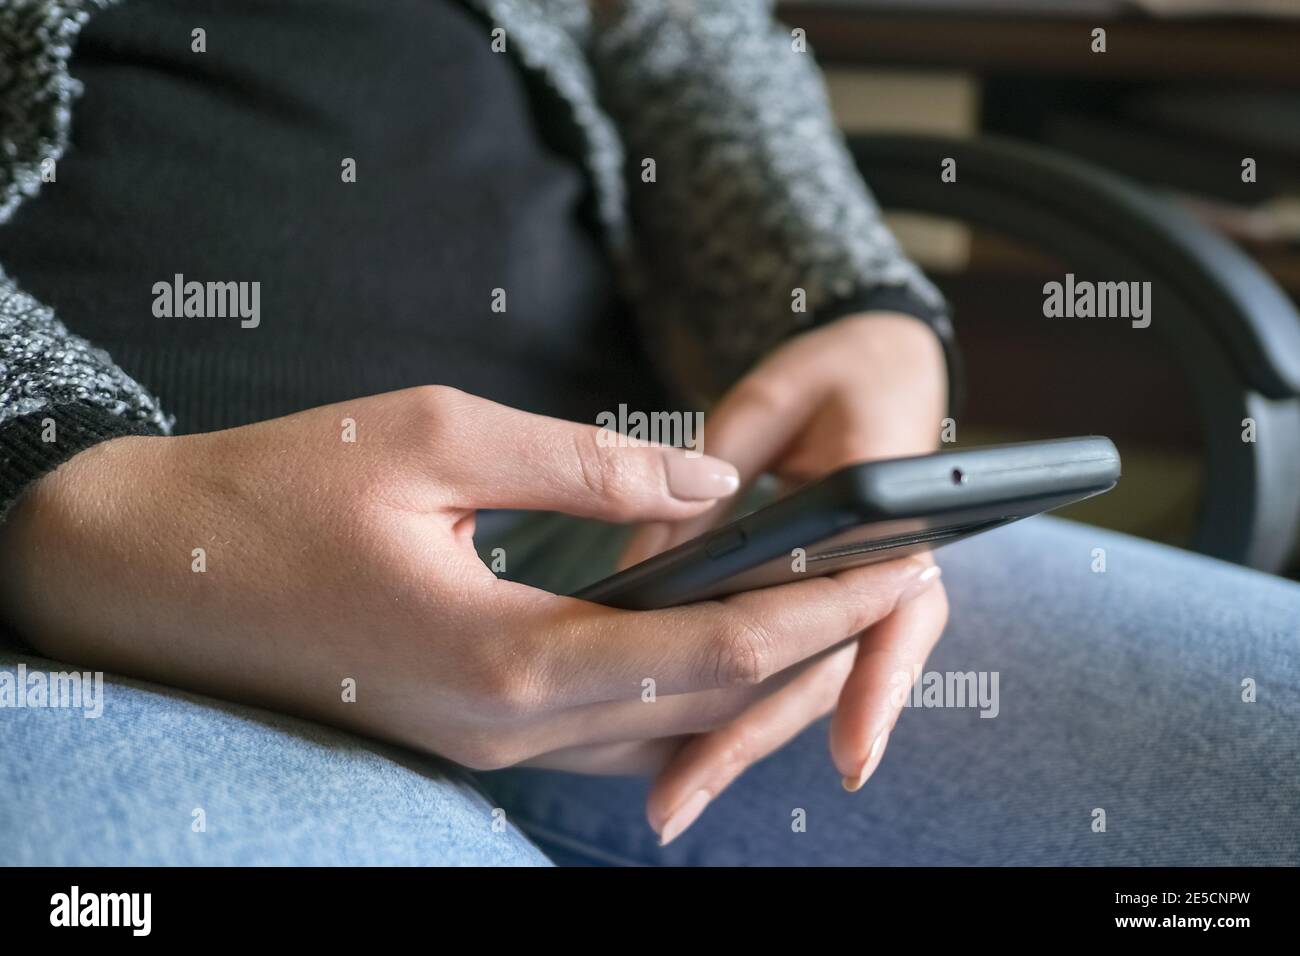 Donna che utilizza lo smartphone per la chat di messaggistica su uno smartphone,social network dipendenza tecnologica Foto Stock